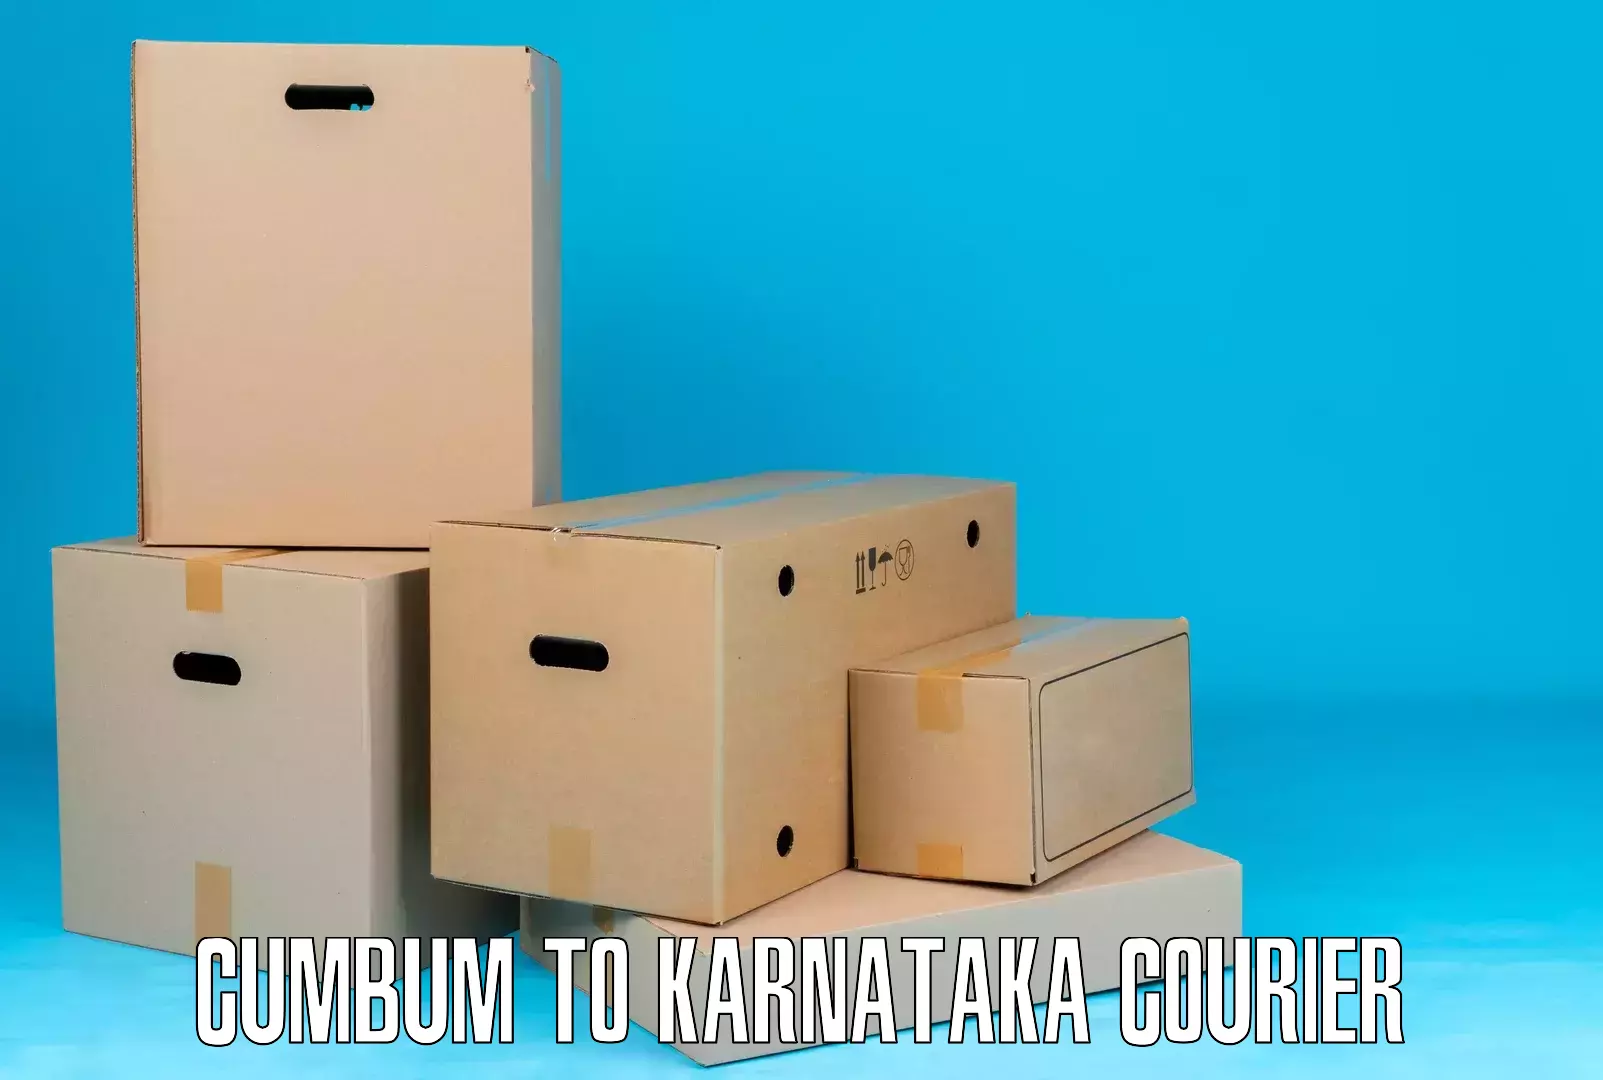 Customer-centric shipping Cumbum to Karnataka